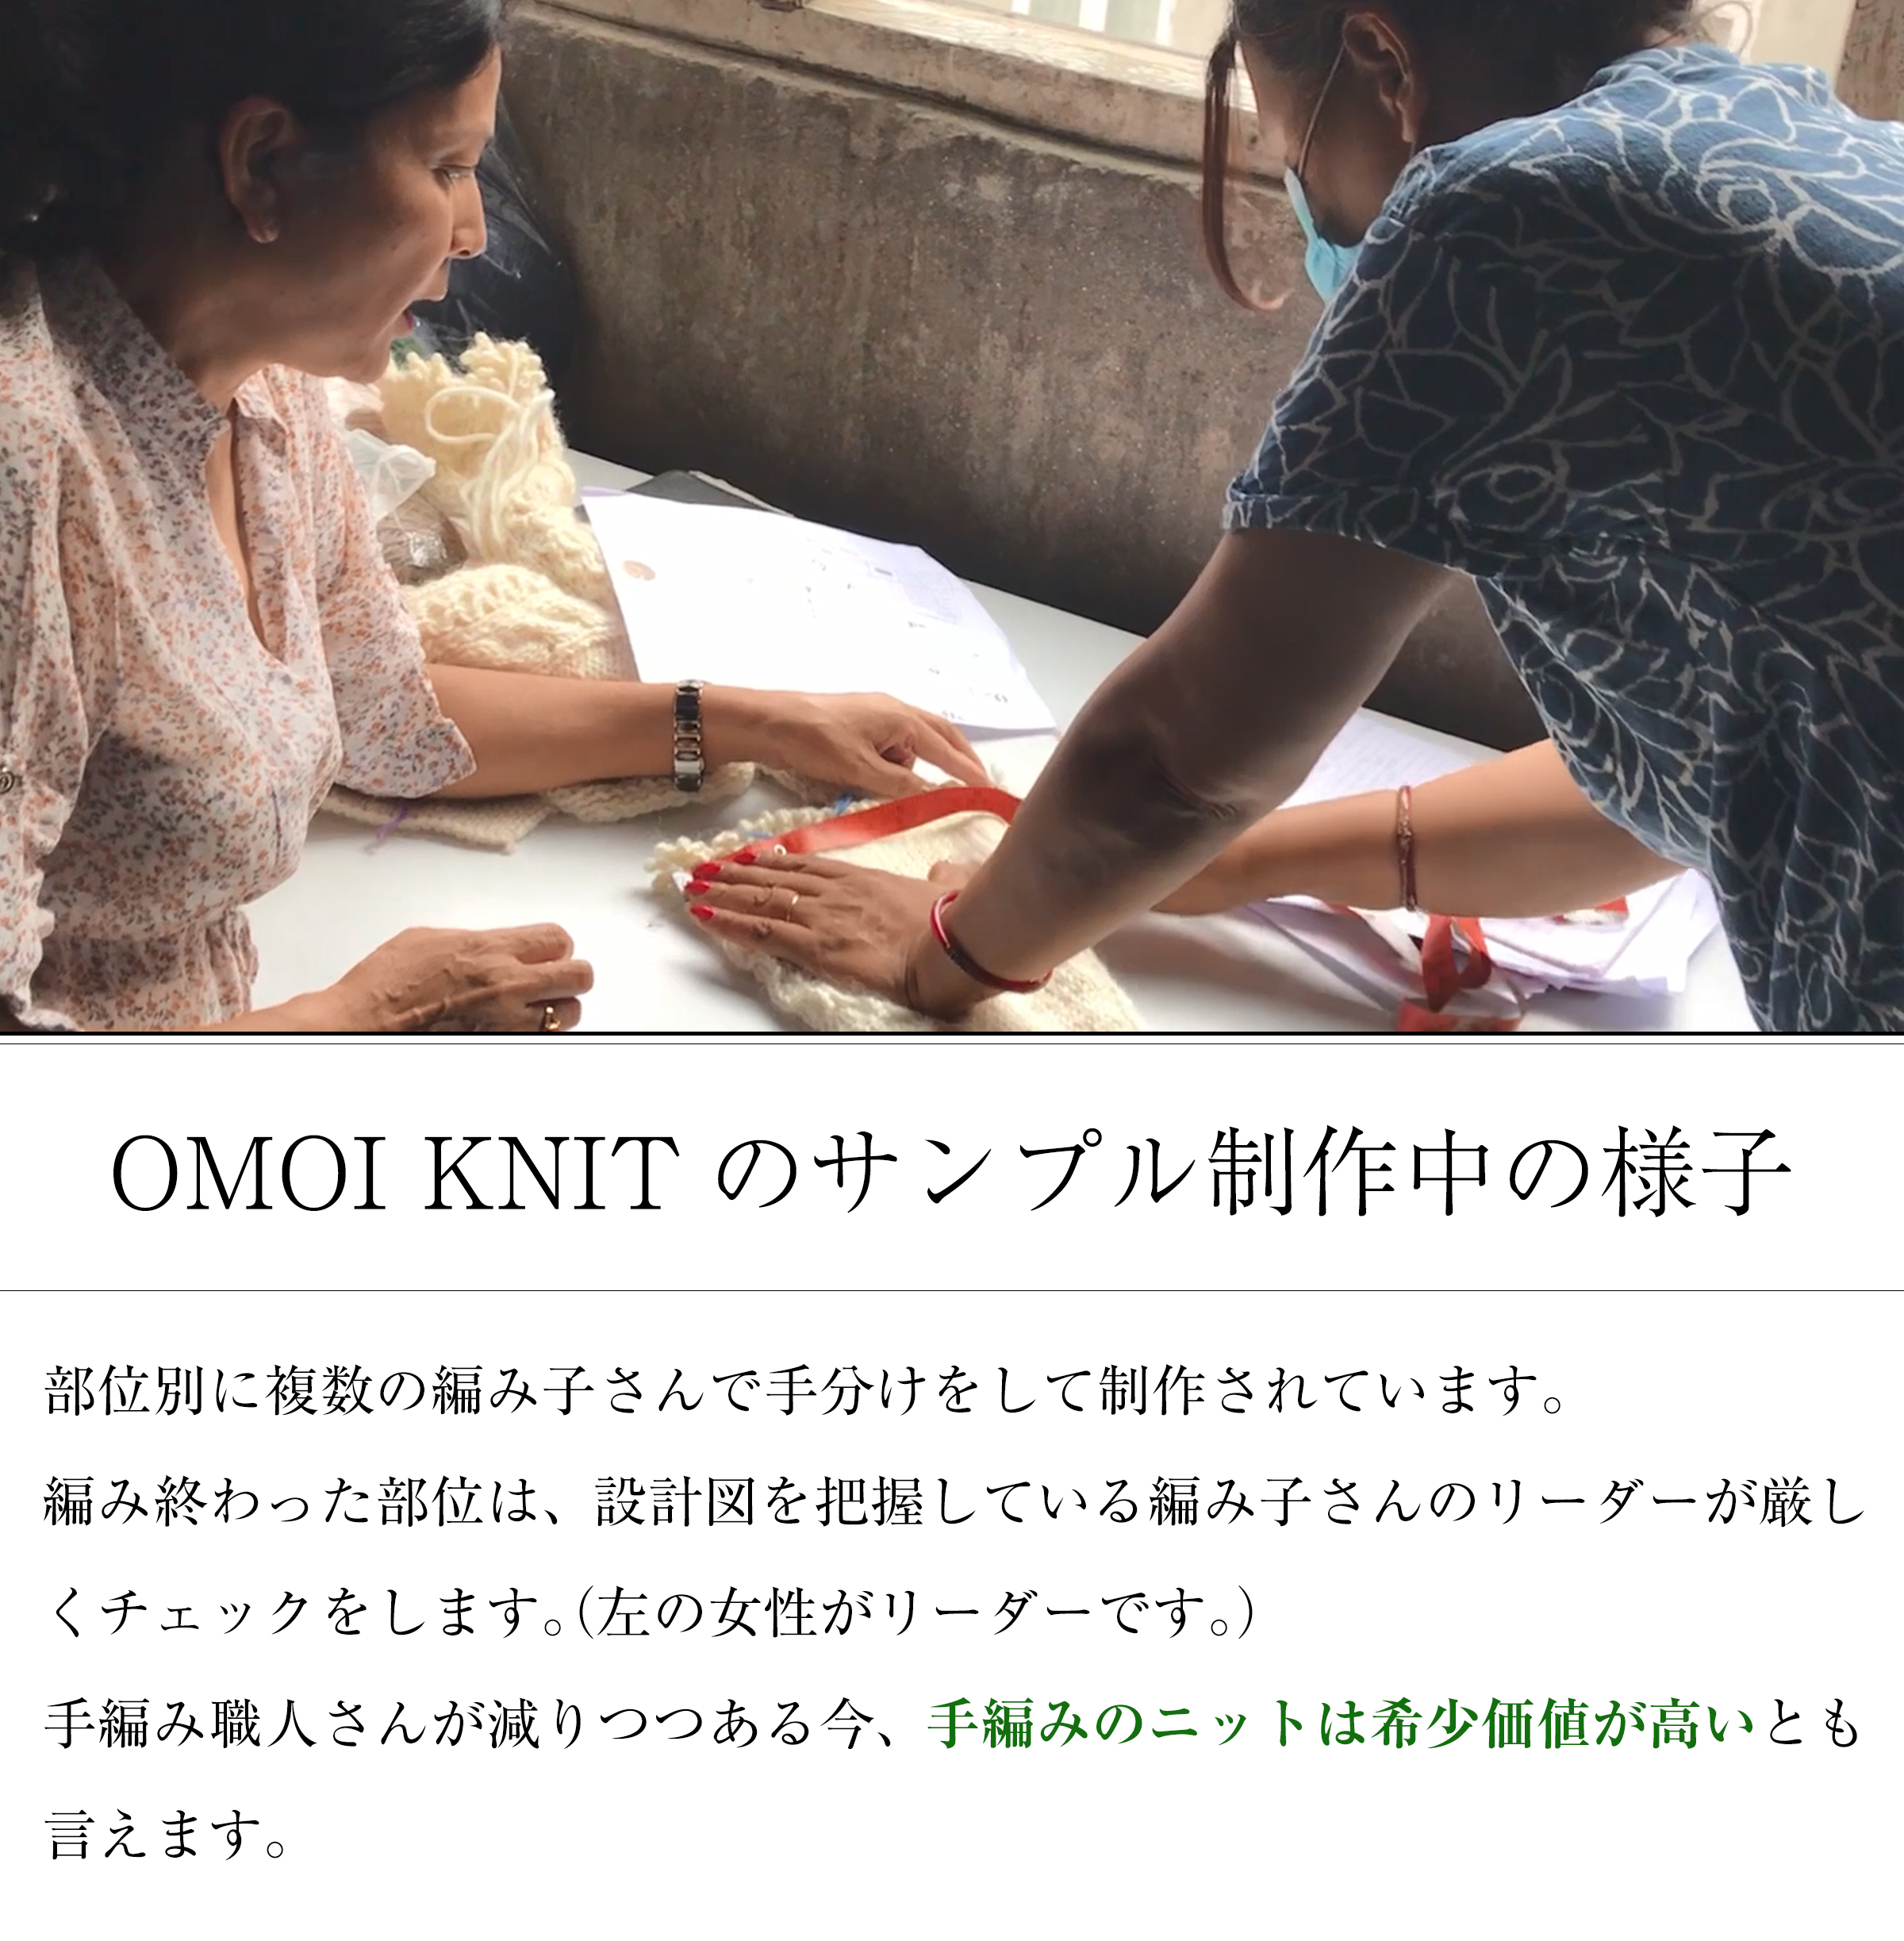 OMOI KNITのサンプル作成中の様子。部位別に複数の編み子さんで手分けをして制作されています。編み終わった部位は、設計図を把握している編み子さんのリーダーが厳しくチェックをします。（左の女性がリーダーです。）手編み職人さんが減りつつある今、手編みのニットは希少価値が高いとも言えます。